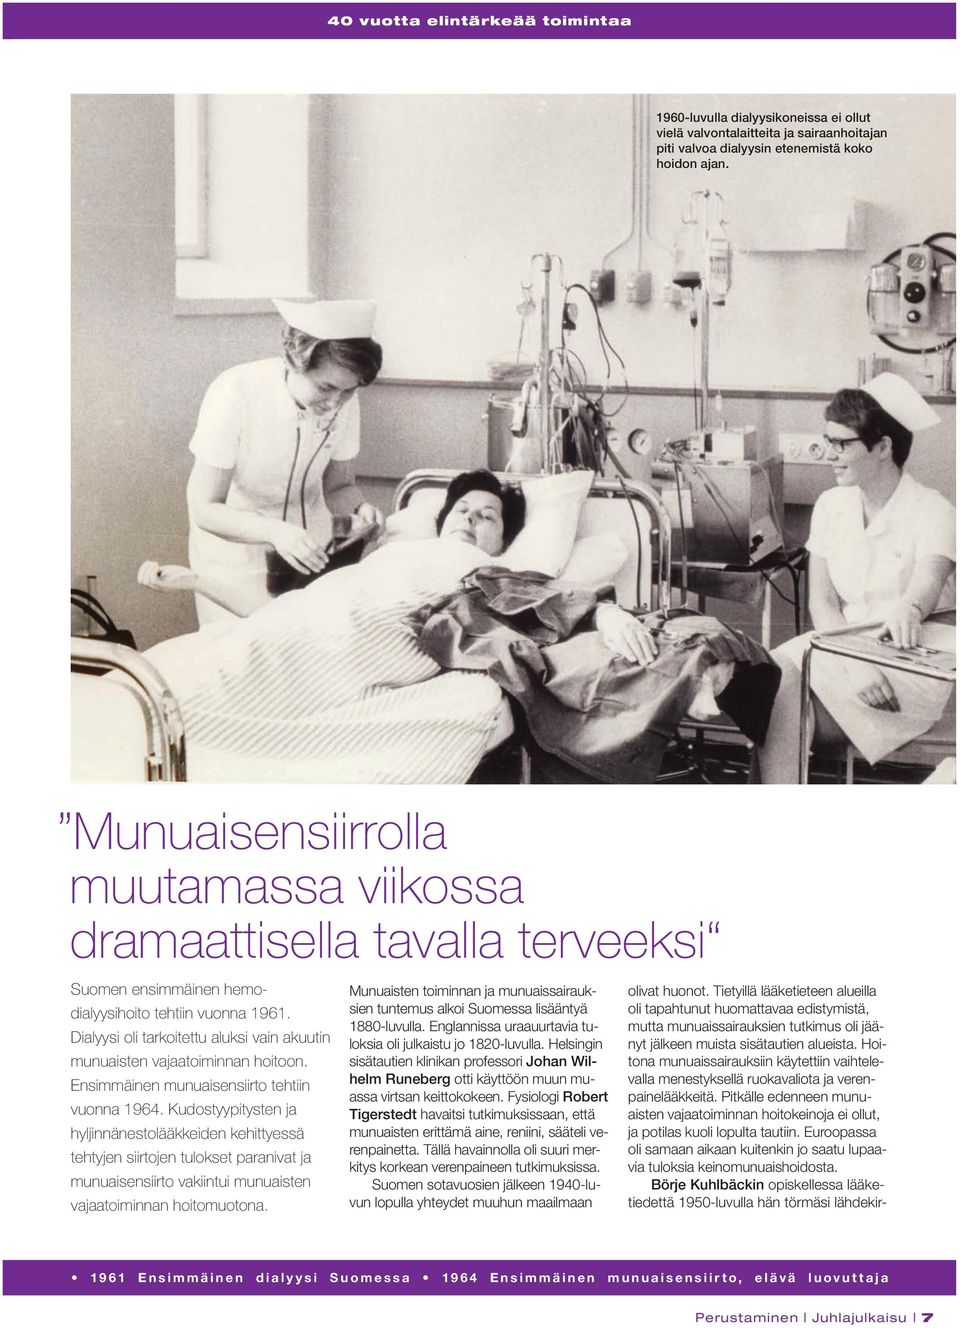 Dialyysi oli tarkoitettu aluksi vain akuutin munuaisten vajaatoiminnan hoitoon. Ensimmäinen munuaisensiirto tehtiin vuonna 1964.